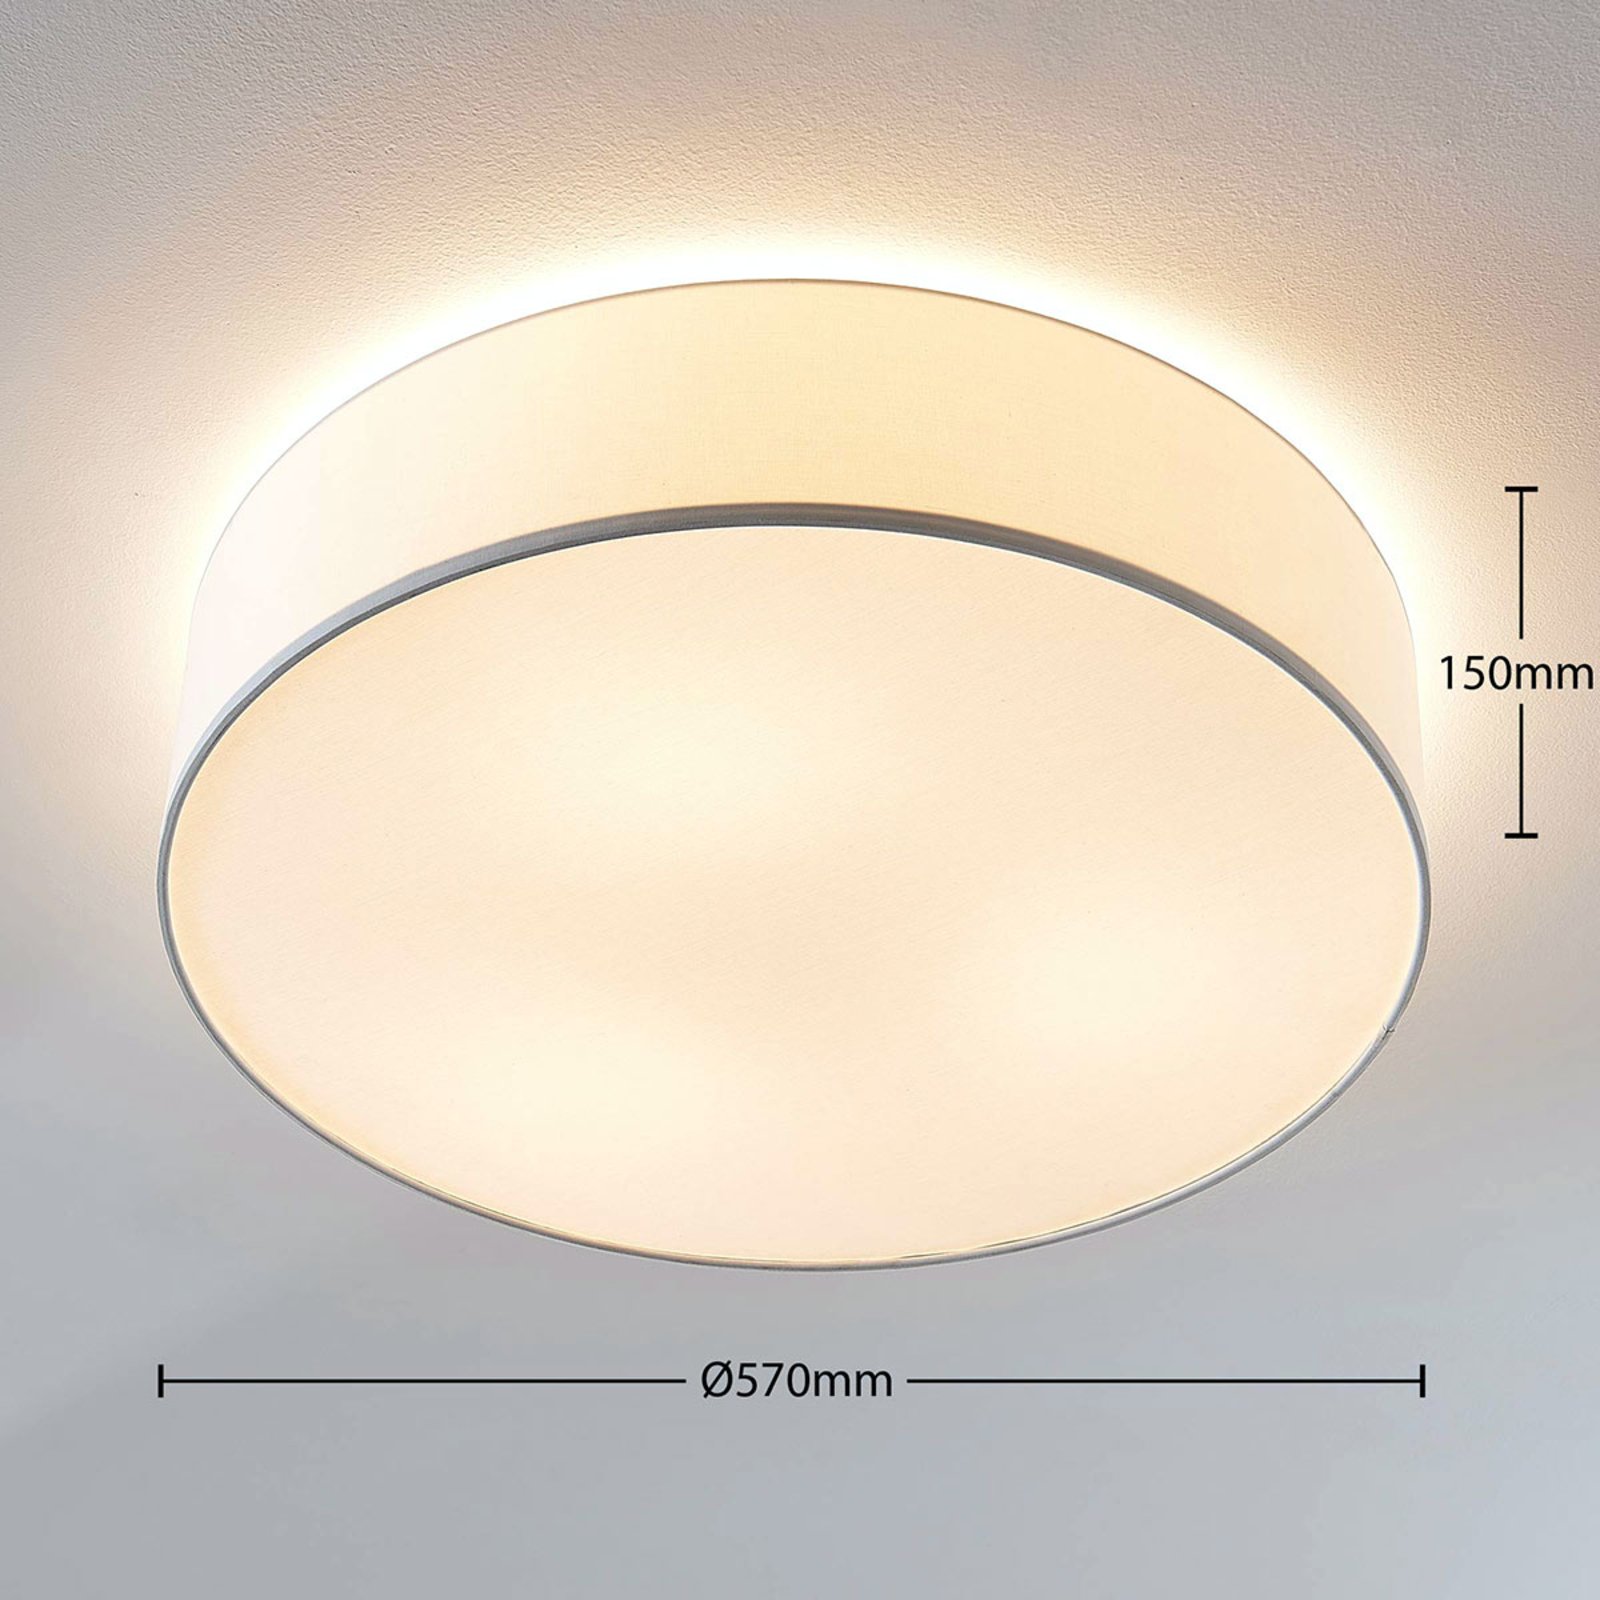 Stoff-Deckenlampe Gordana in Weiß, 57 cm